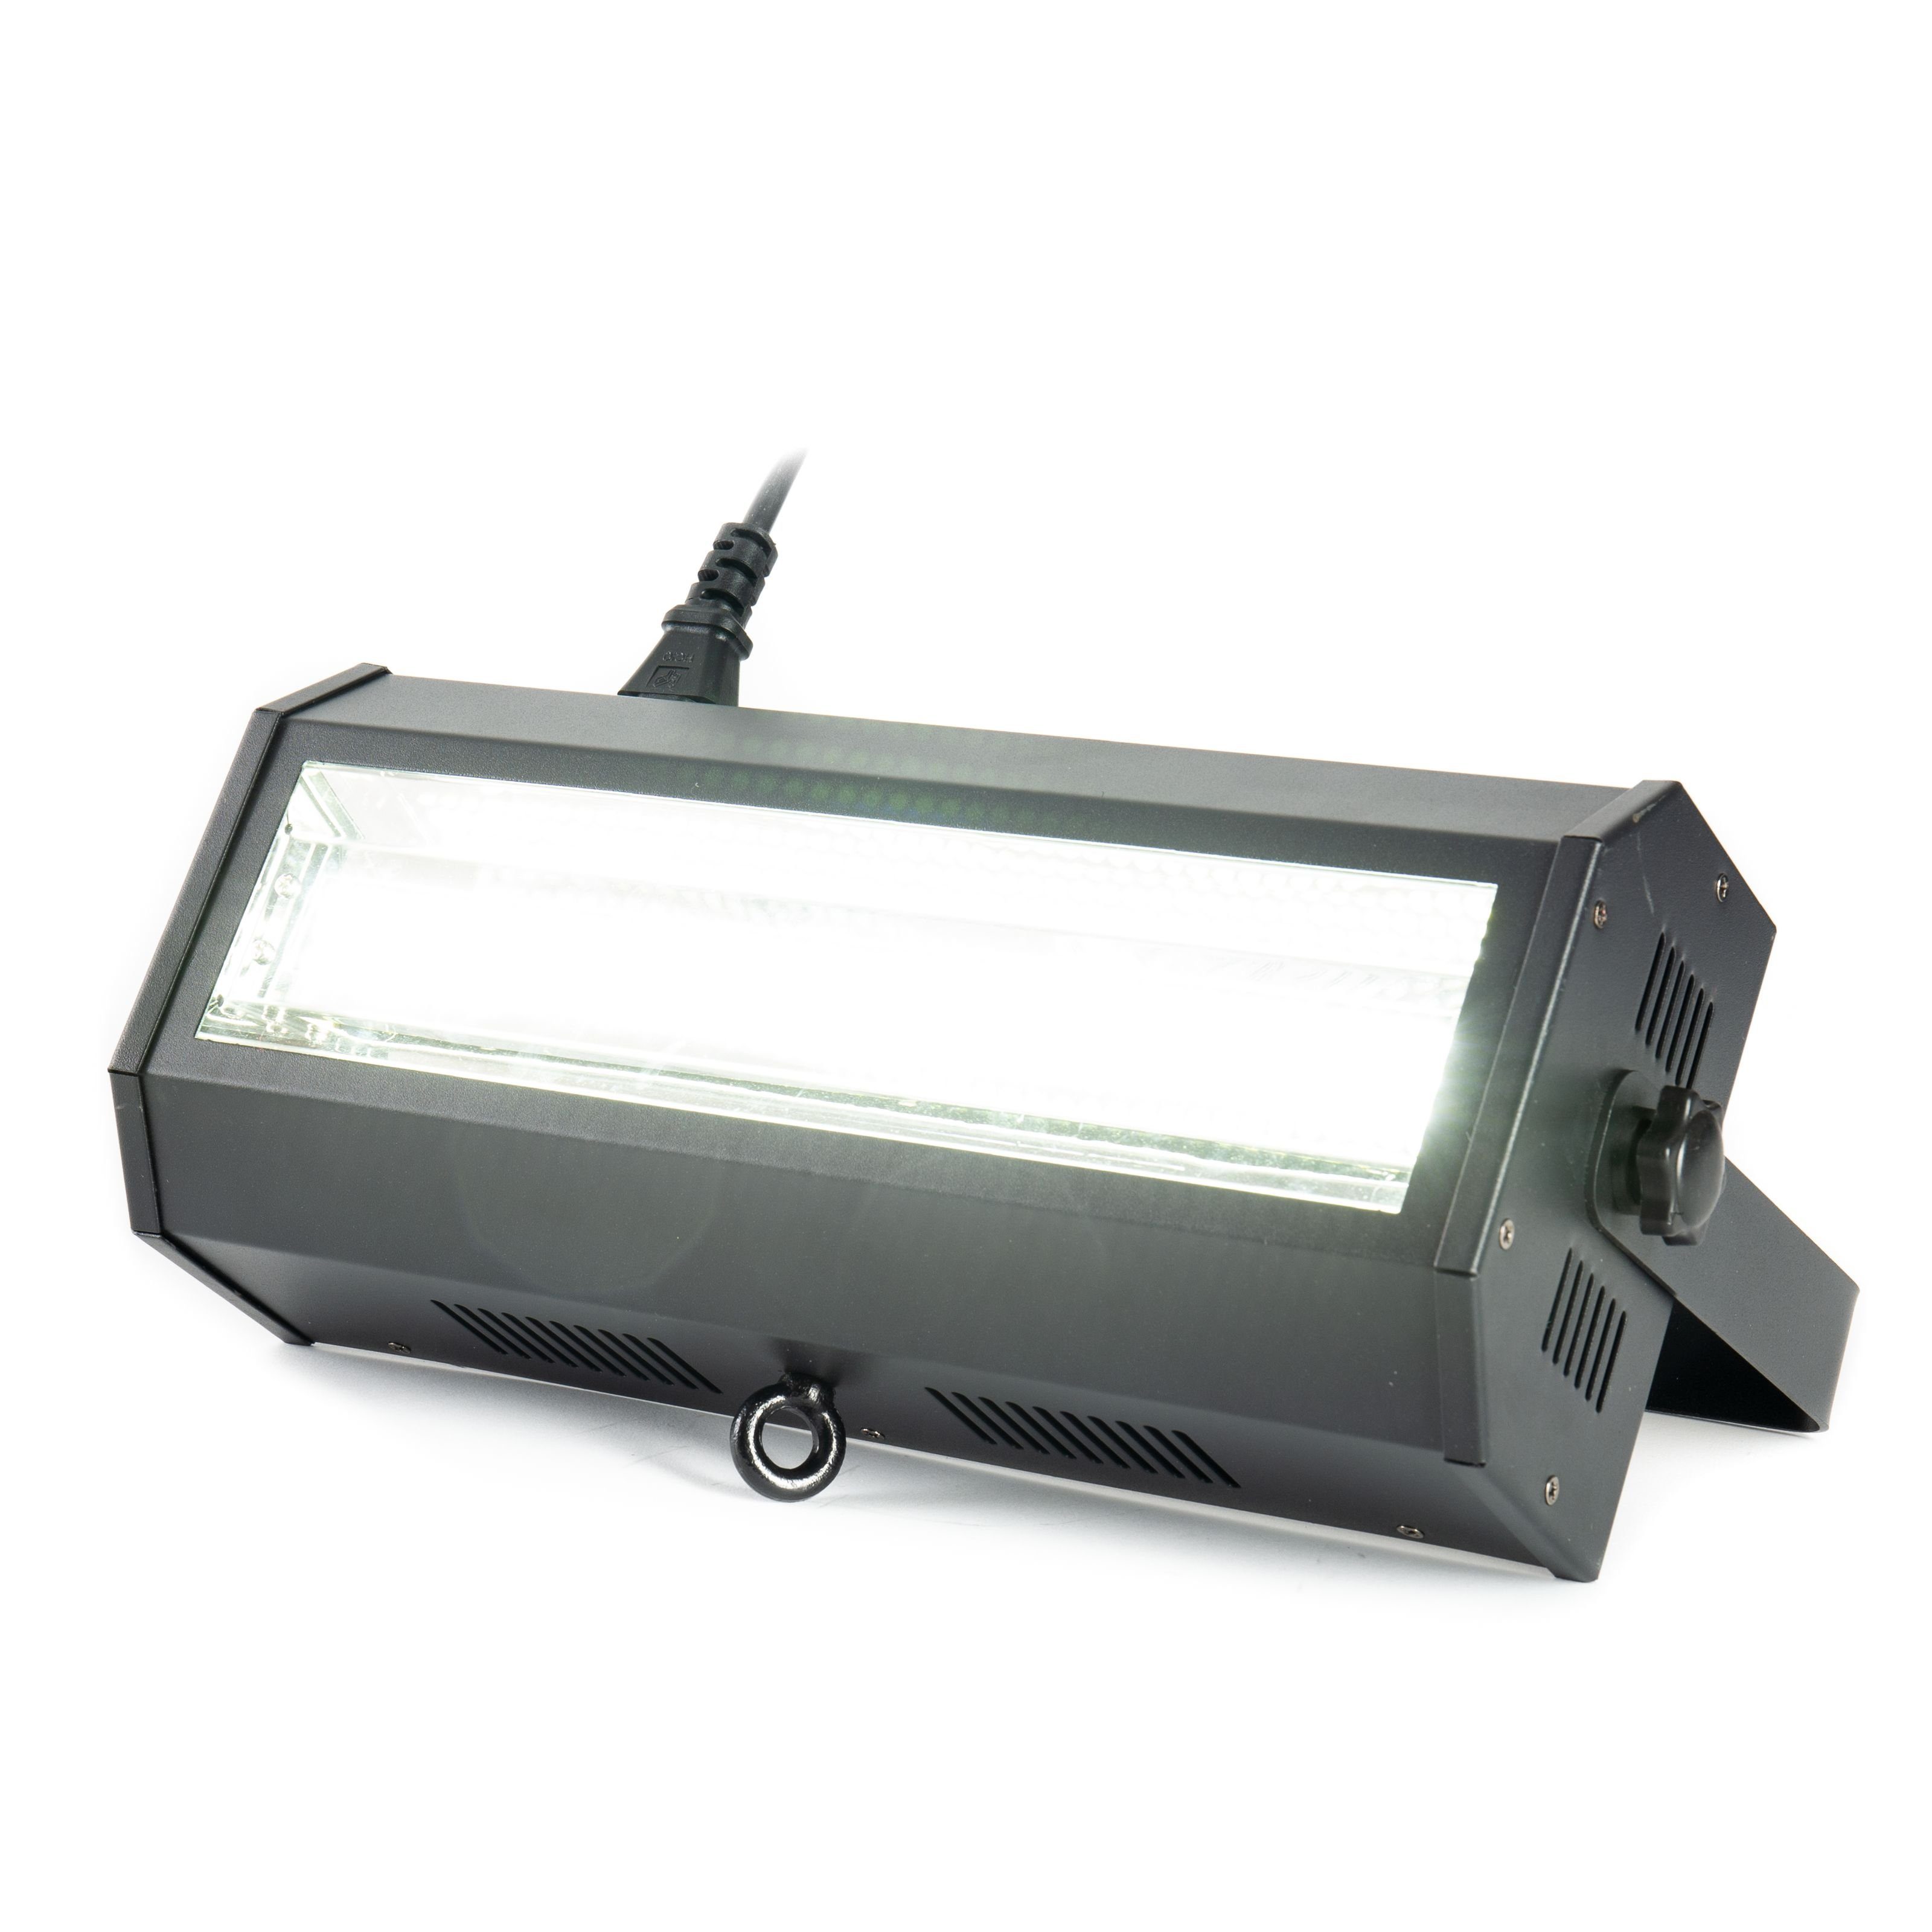 lightmaXX Discolicht, Nano Strobe 200 132 x 5050 SMD white LEDs - Stroboskop